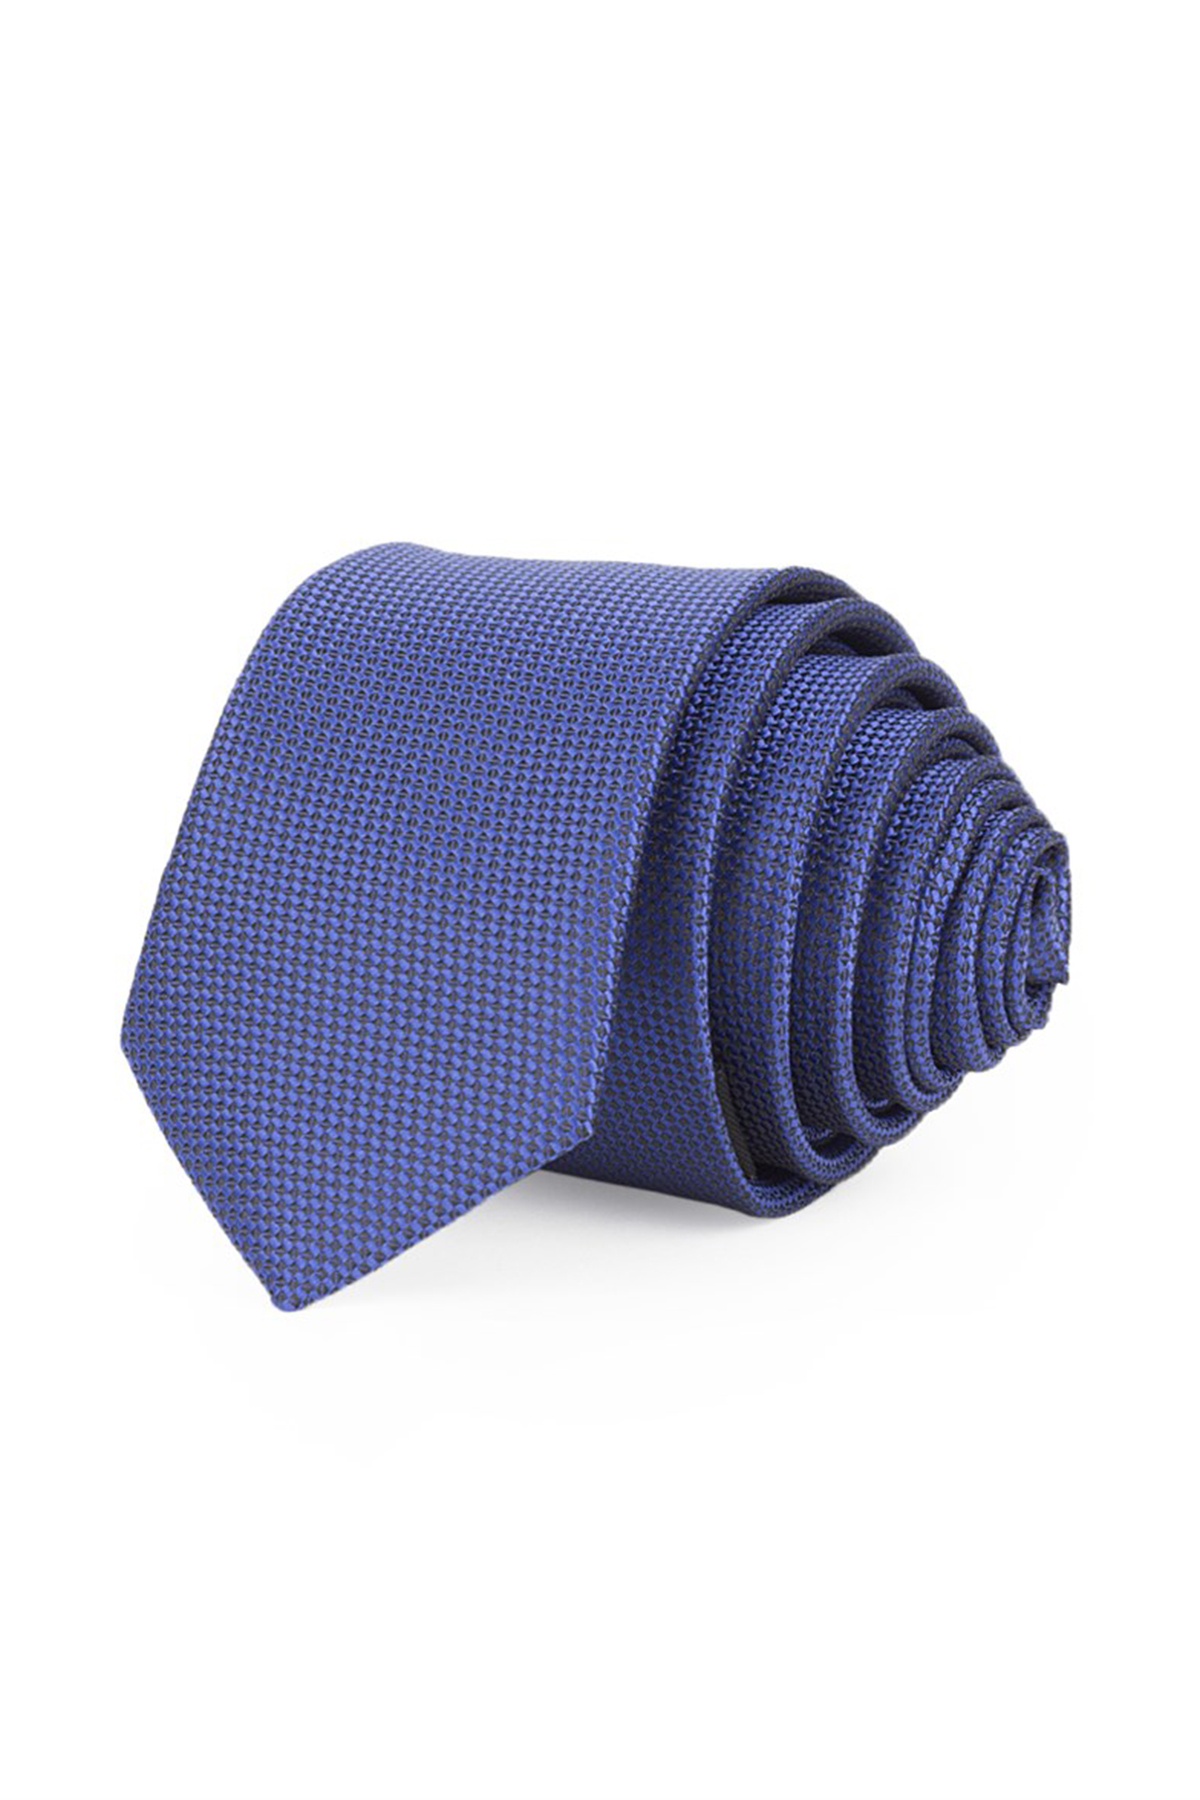 Királykék színű anyagában mintás vékony nyakkendő